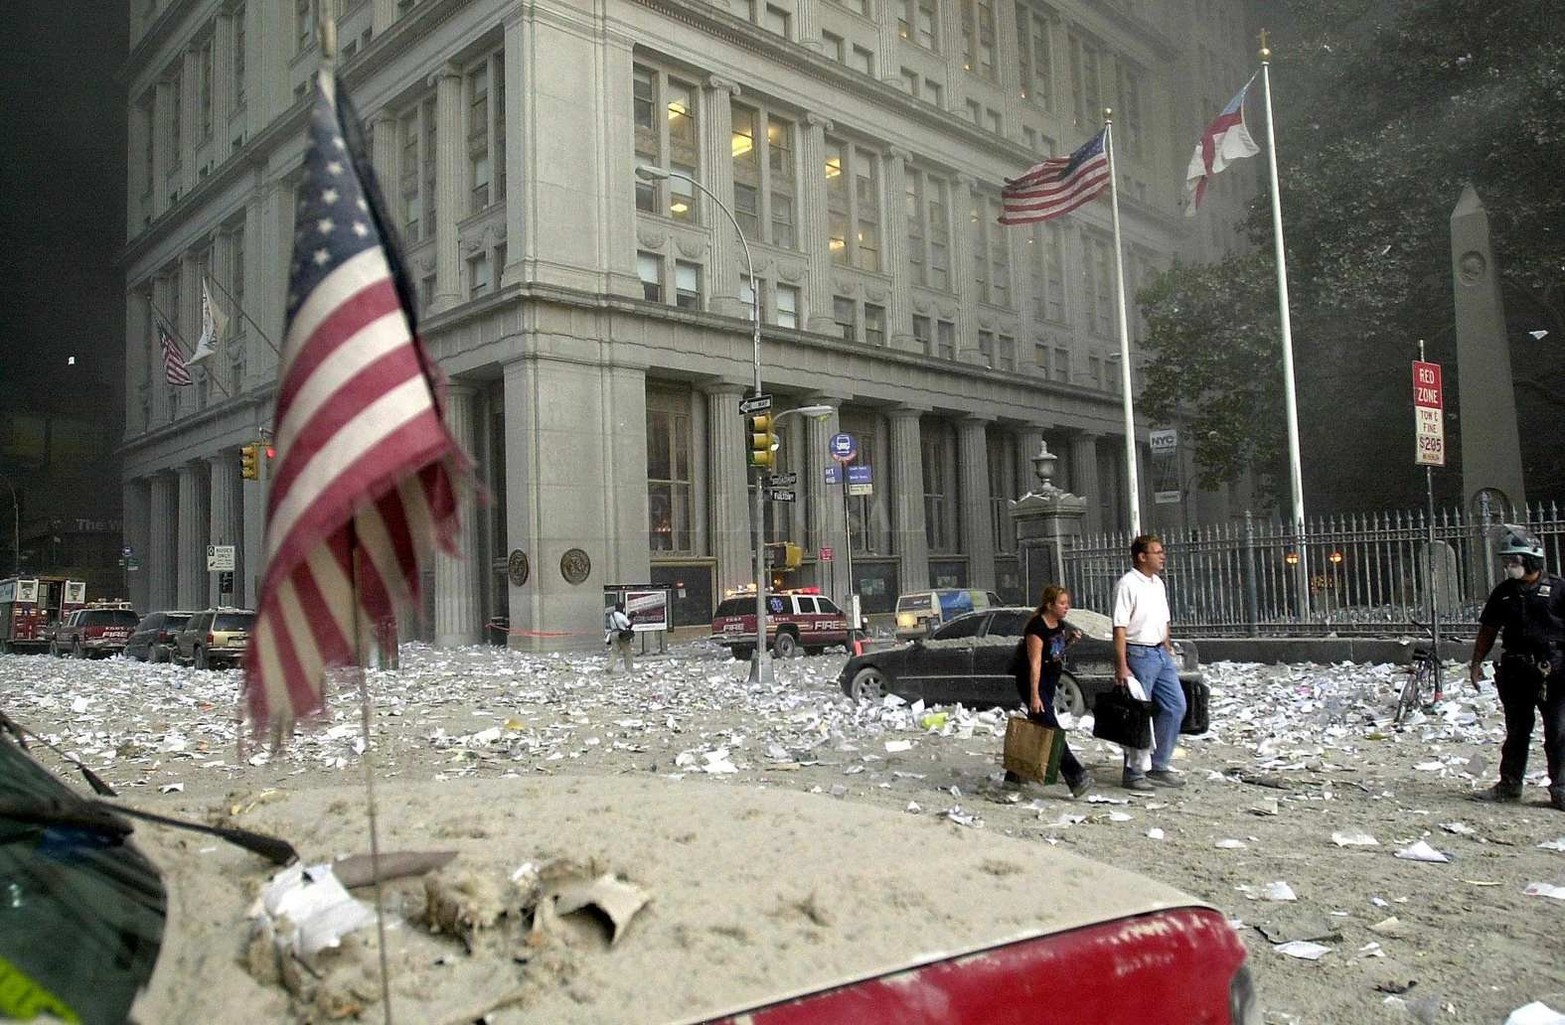 El martes 11 de septiembre de 2001, cuatro atentados terroristas suicidas en los Estados Unidos conmocionaron al mundo. Uno de los lugares fue el Centro del Comercio Mundial en Nueva York.  Causaron la muerte de 2.996 personas, incluidos los 19 terroristas, la desaparición de 24 víctimas y más de 25 mil heridos.